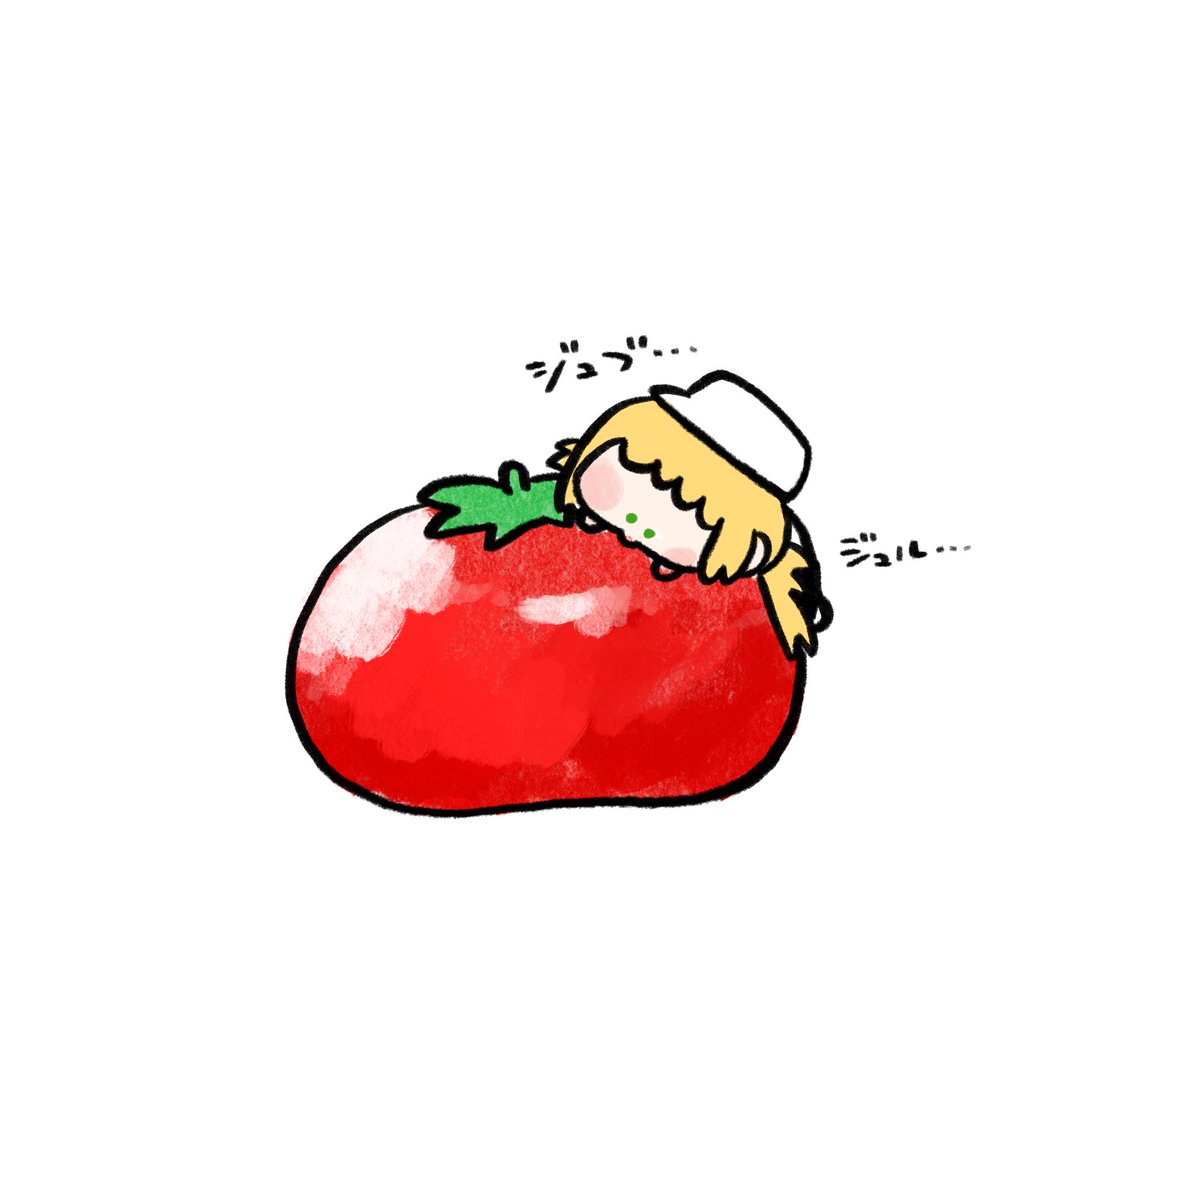 watson amelia 1girl blonde hair food tomato chibi white background hat  illustration images